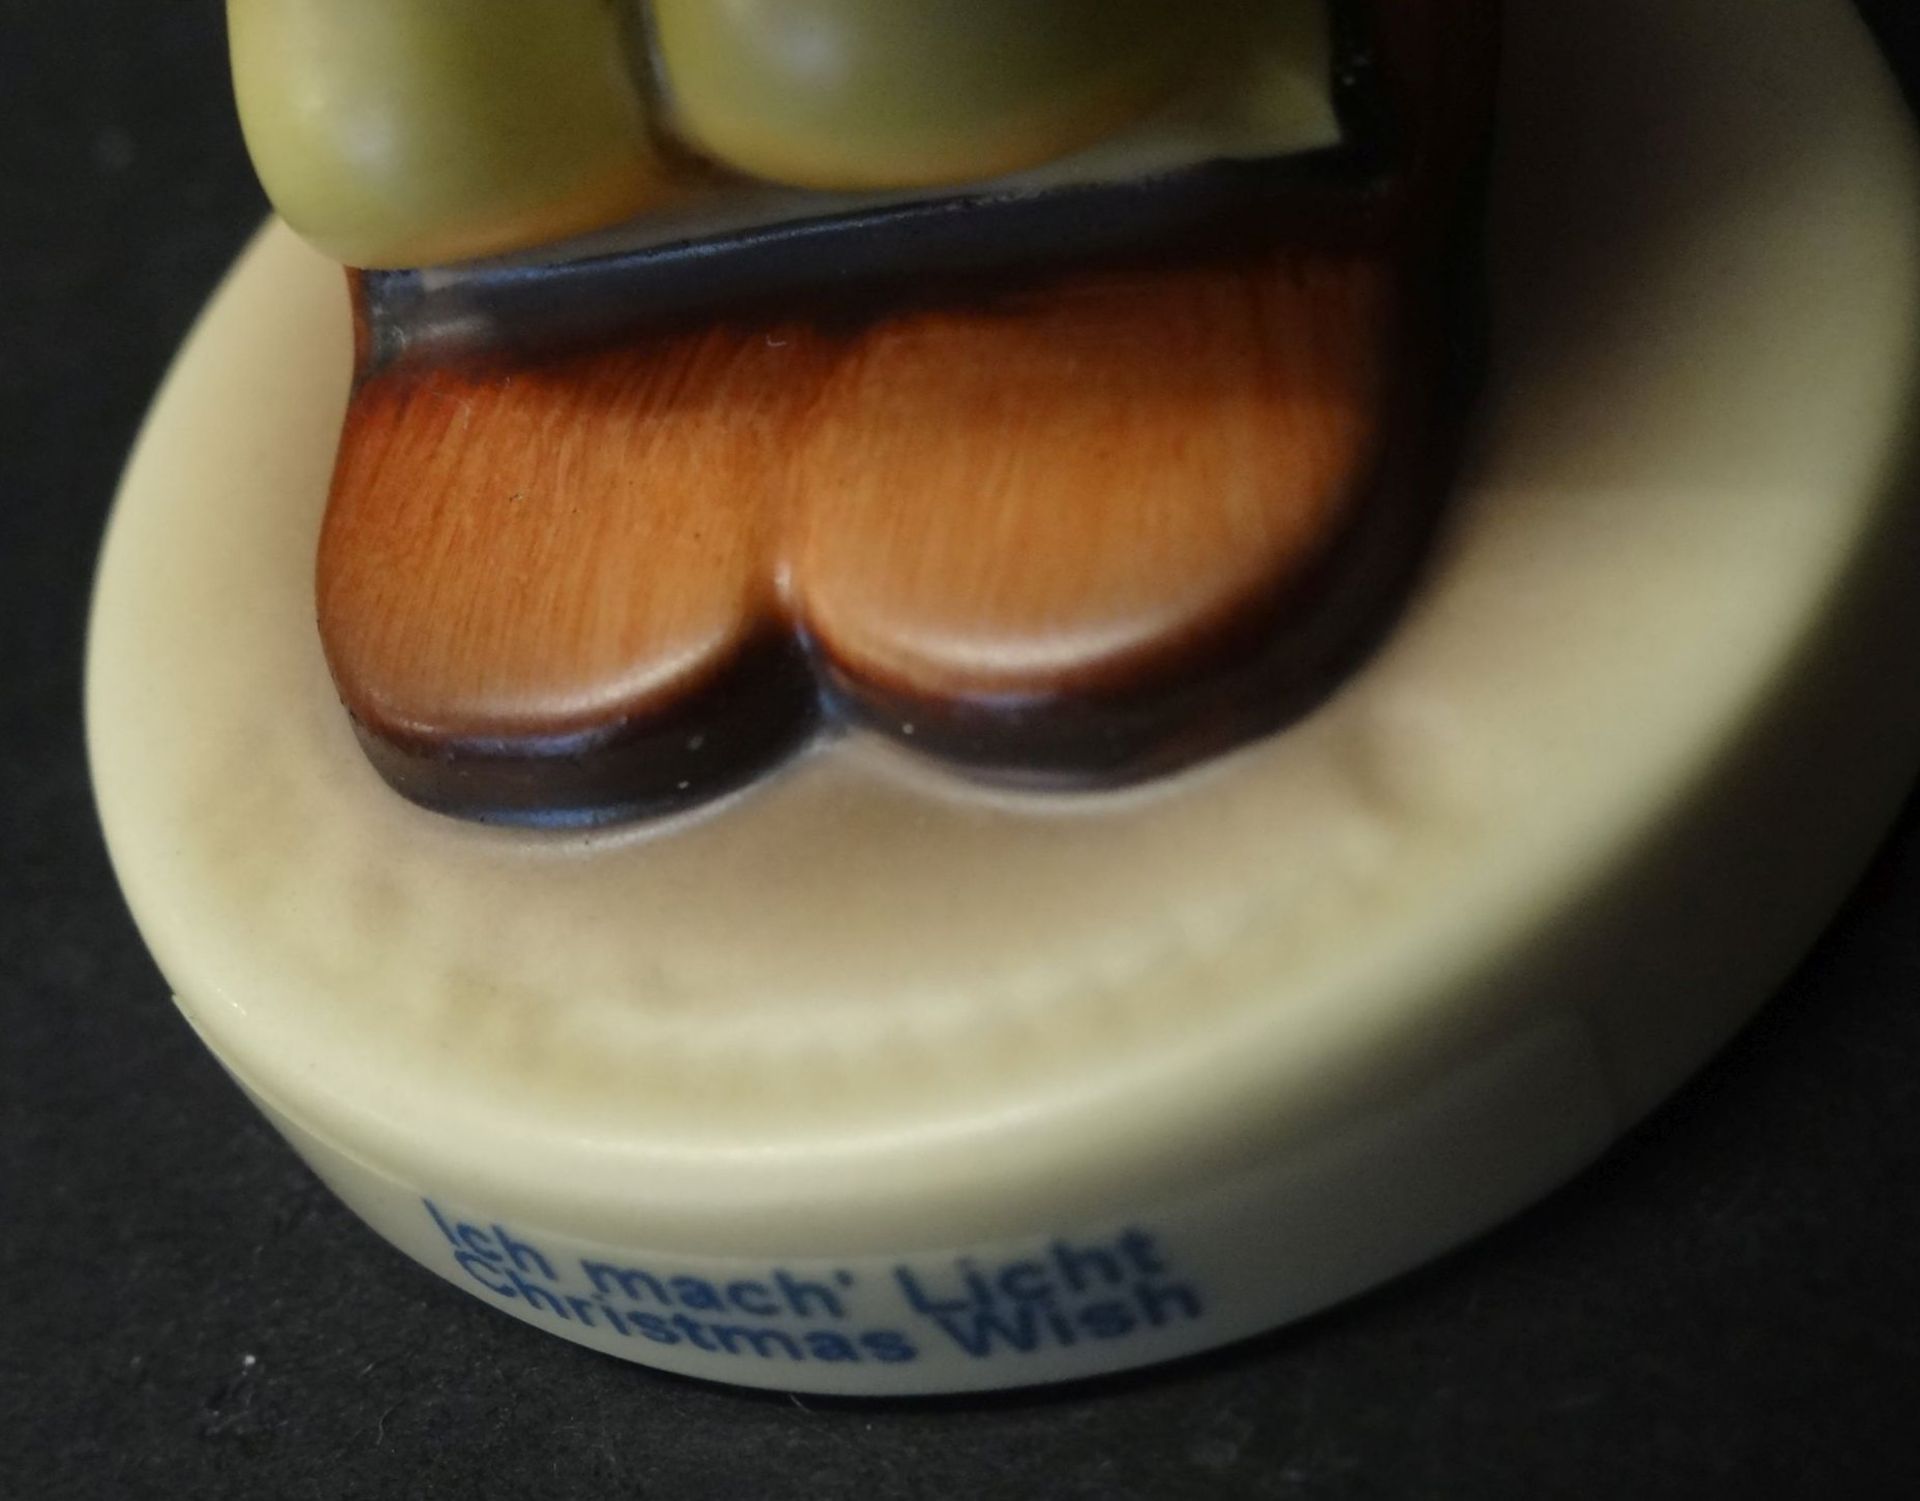 Hummel-Figur "Ich mach Licht" in orig. Karton, bemalt, H-11 cm, gut erhalten - Bild 6 aus 8